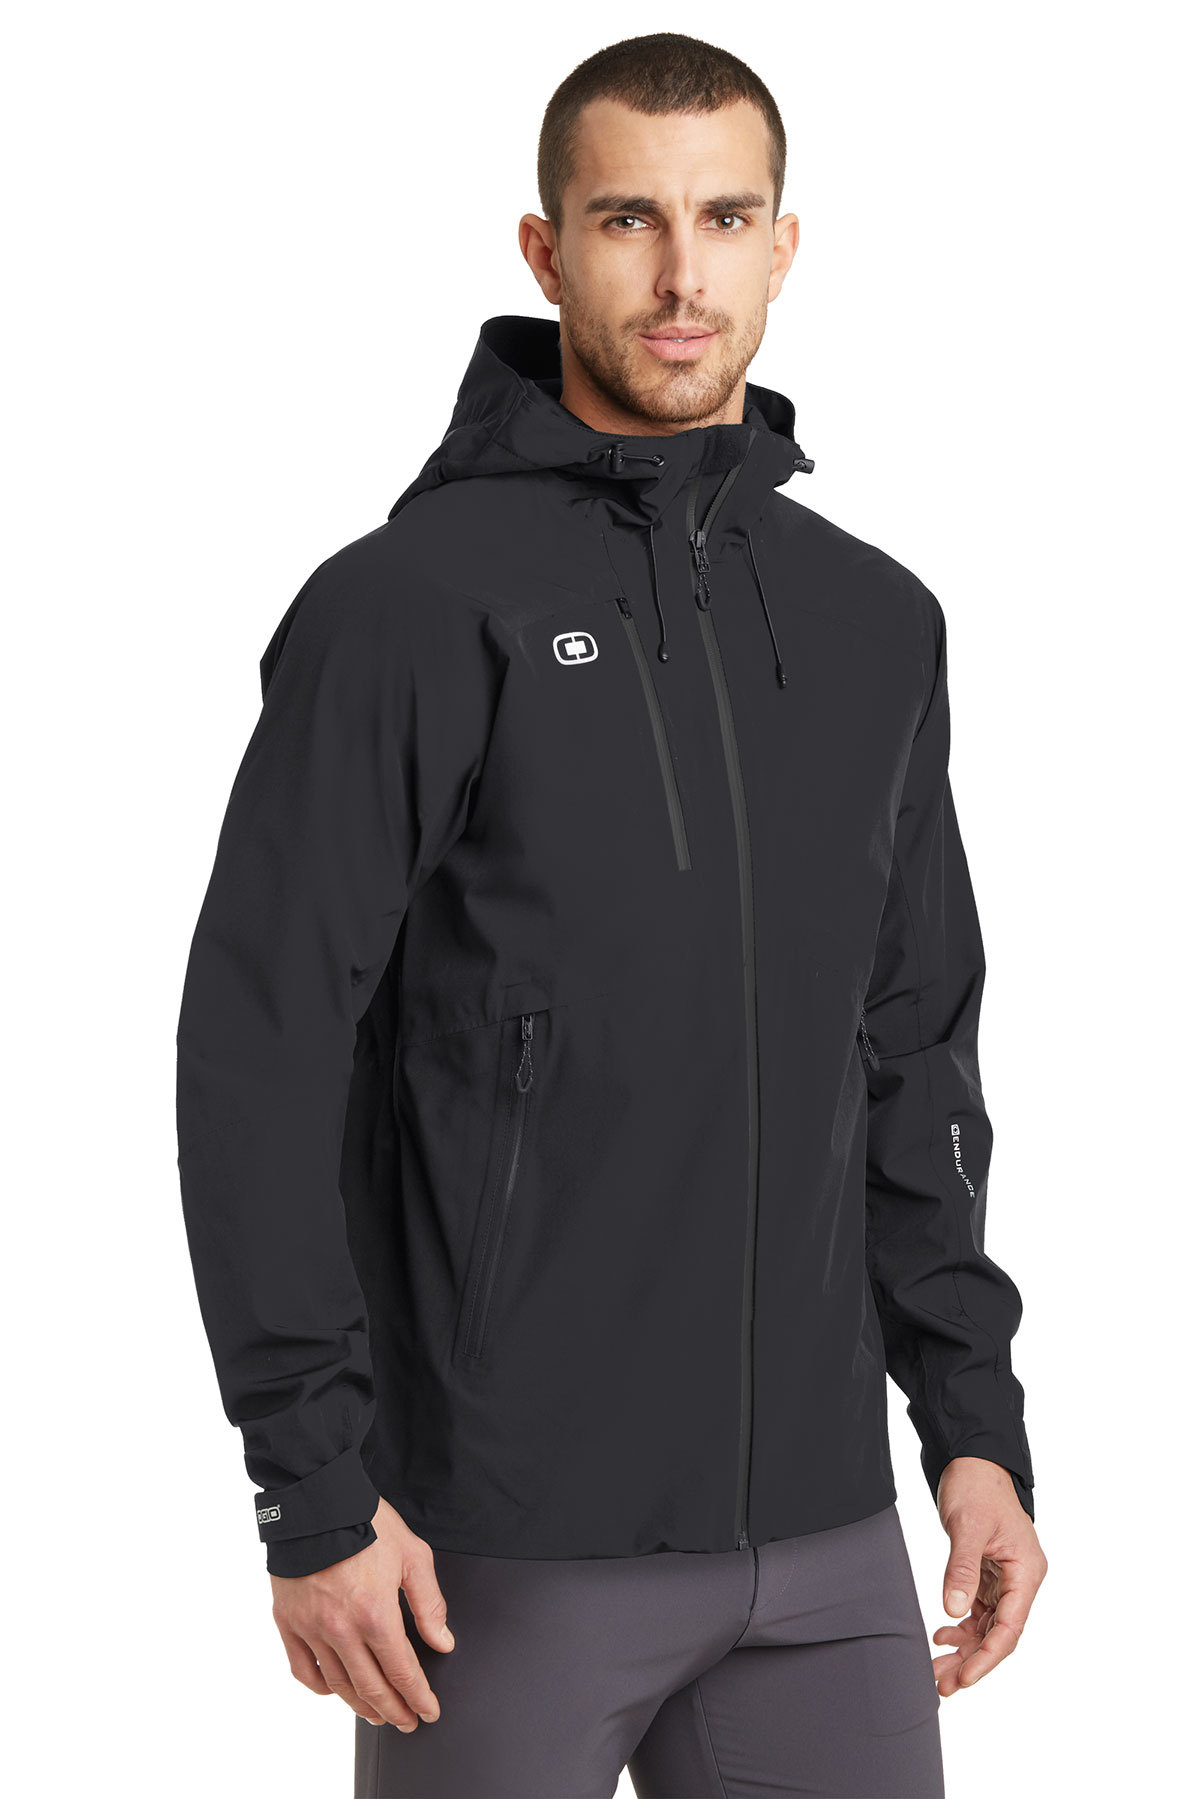 OGIO® ENDURANCE Impact Jacket | Athletic/Warm-Ups | Outerwear | Company ...